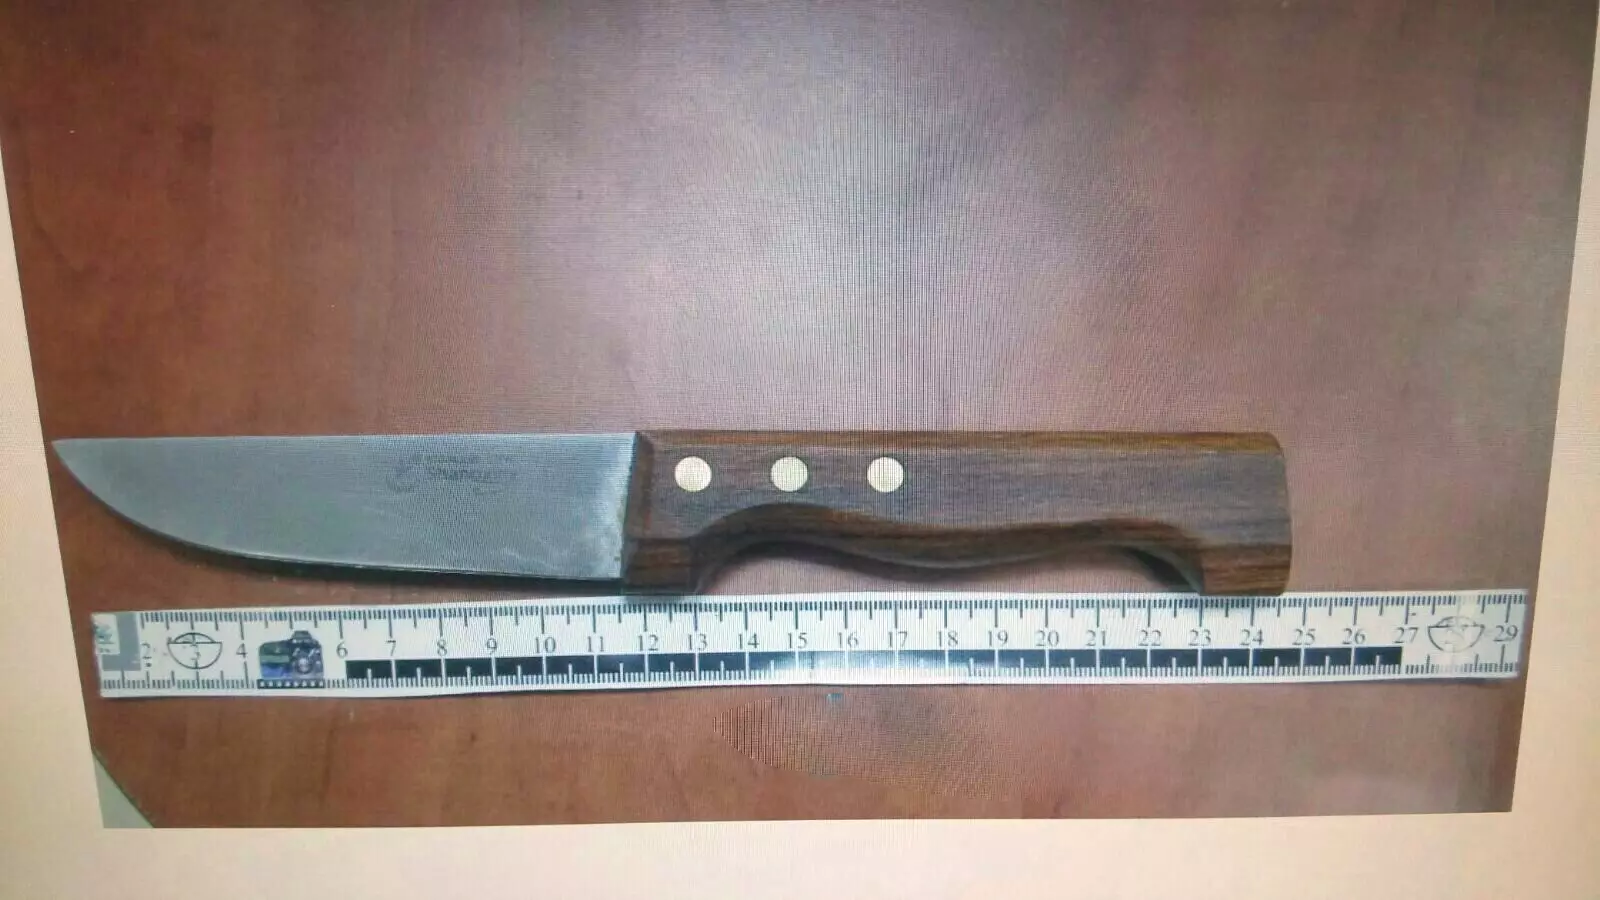 סכין שנתפסה בידי פלסטיני בקריית גת, חשד שהתכוון לבצע פיגוע, דצמבר 2015